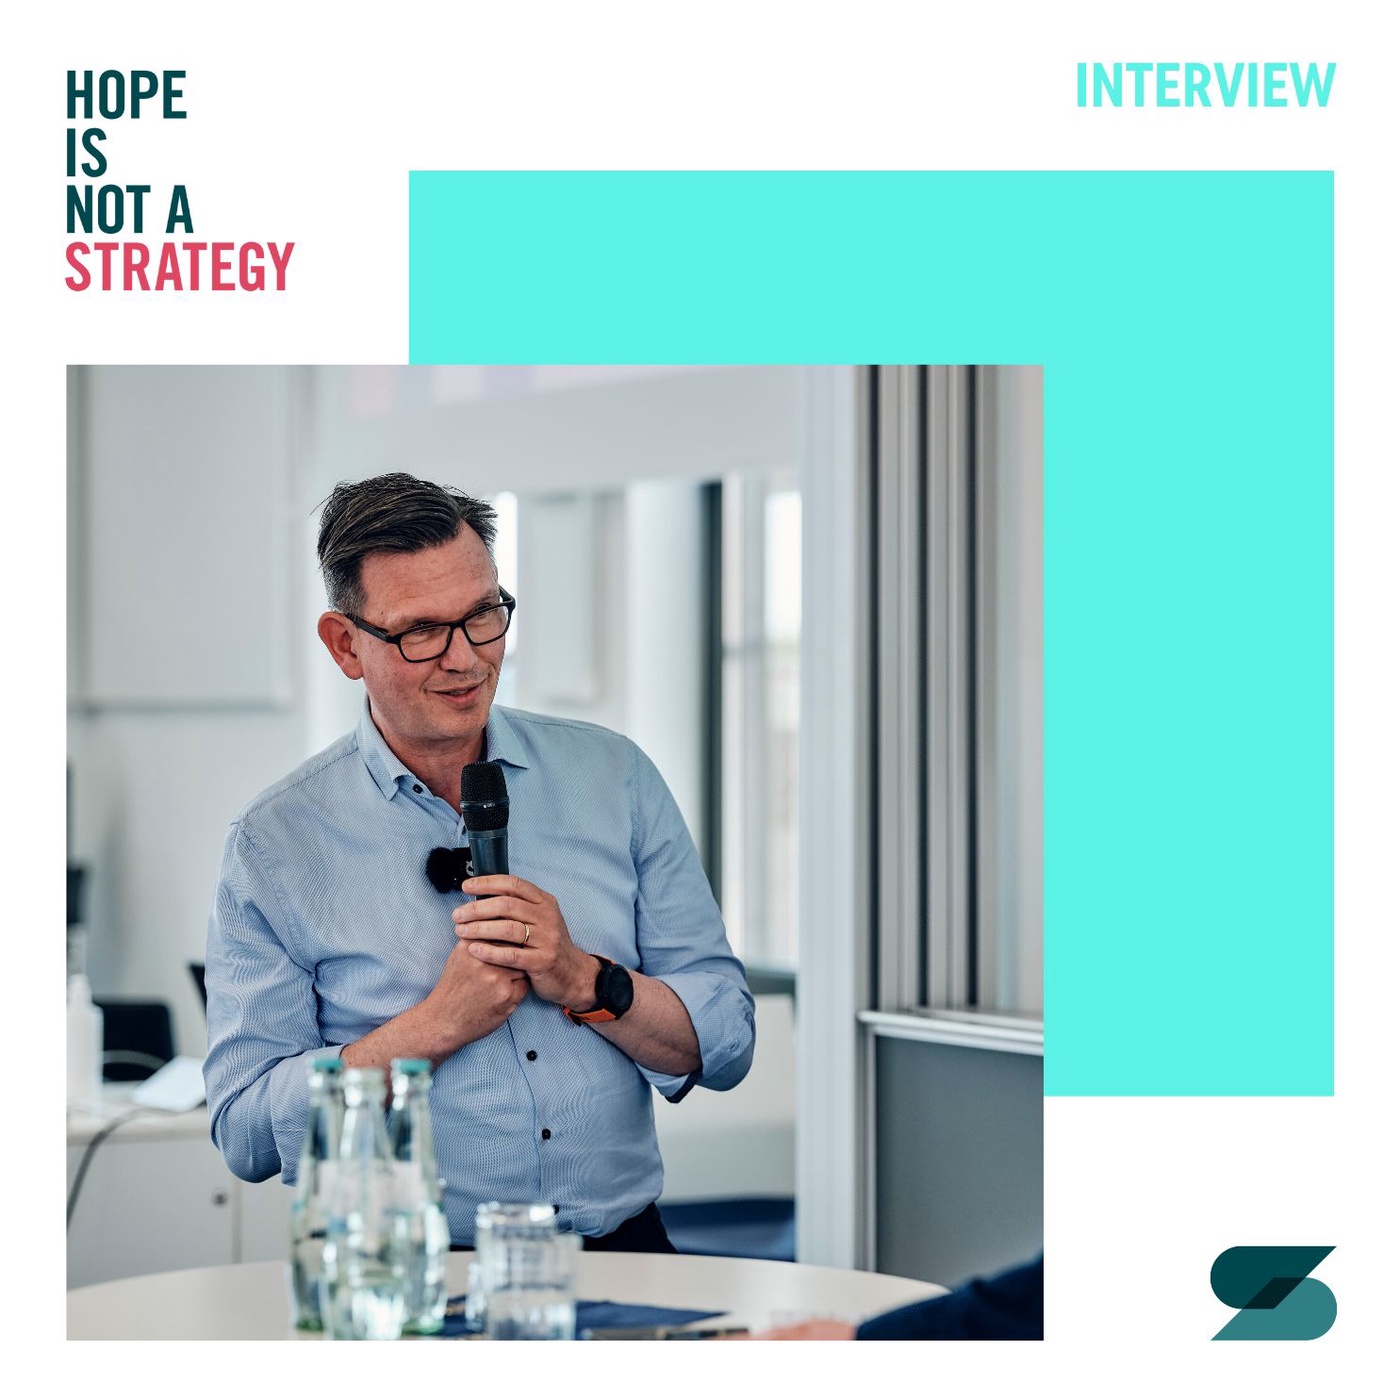 #08 Steffen Bersch: The strategic journey of the SSI SCHÄFER Group